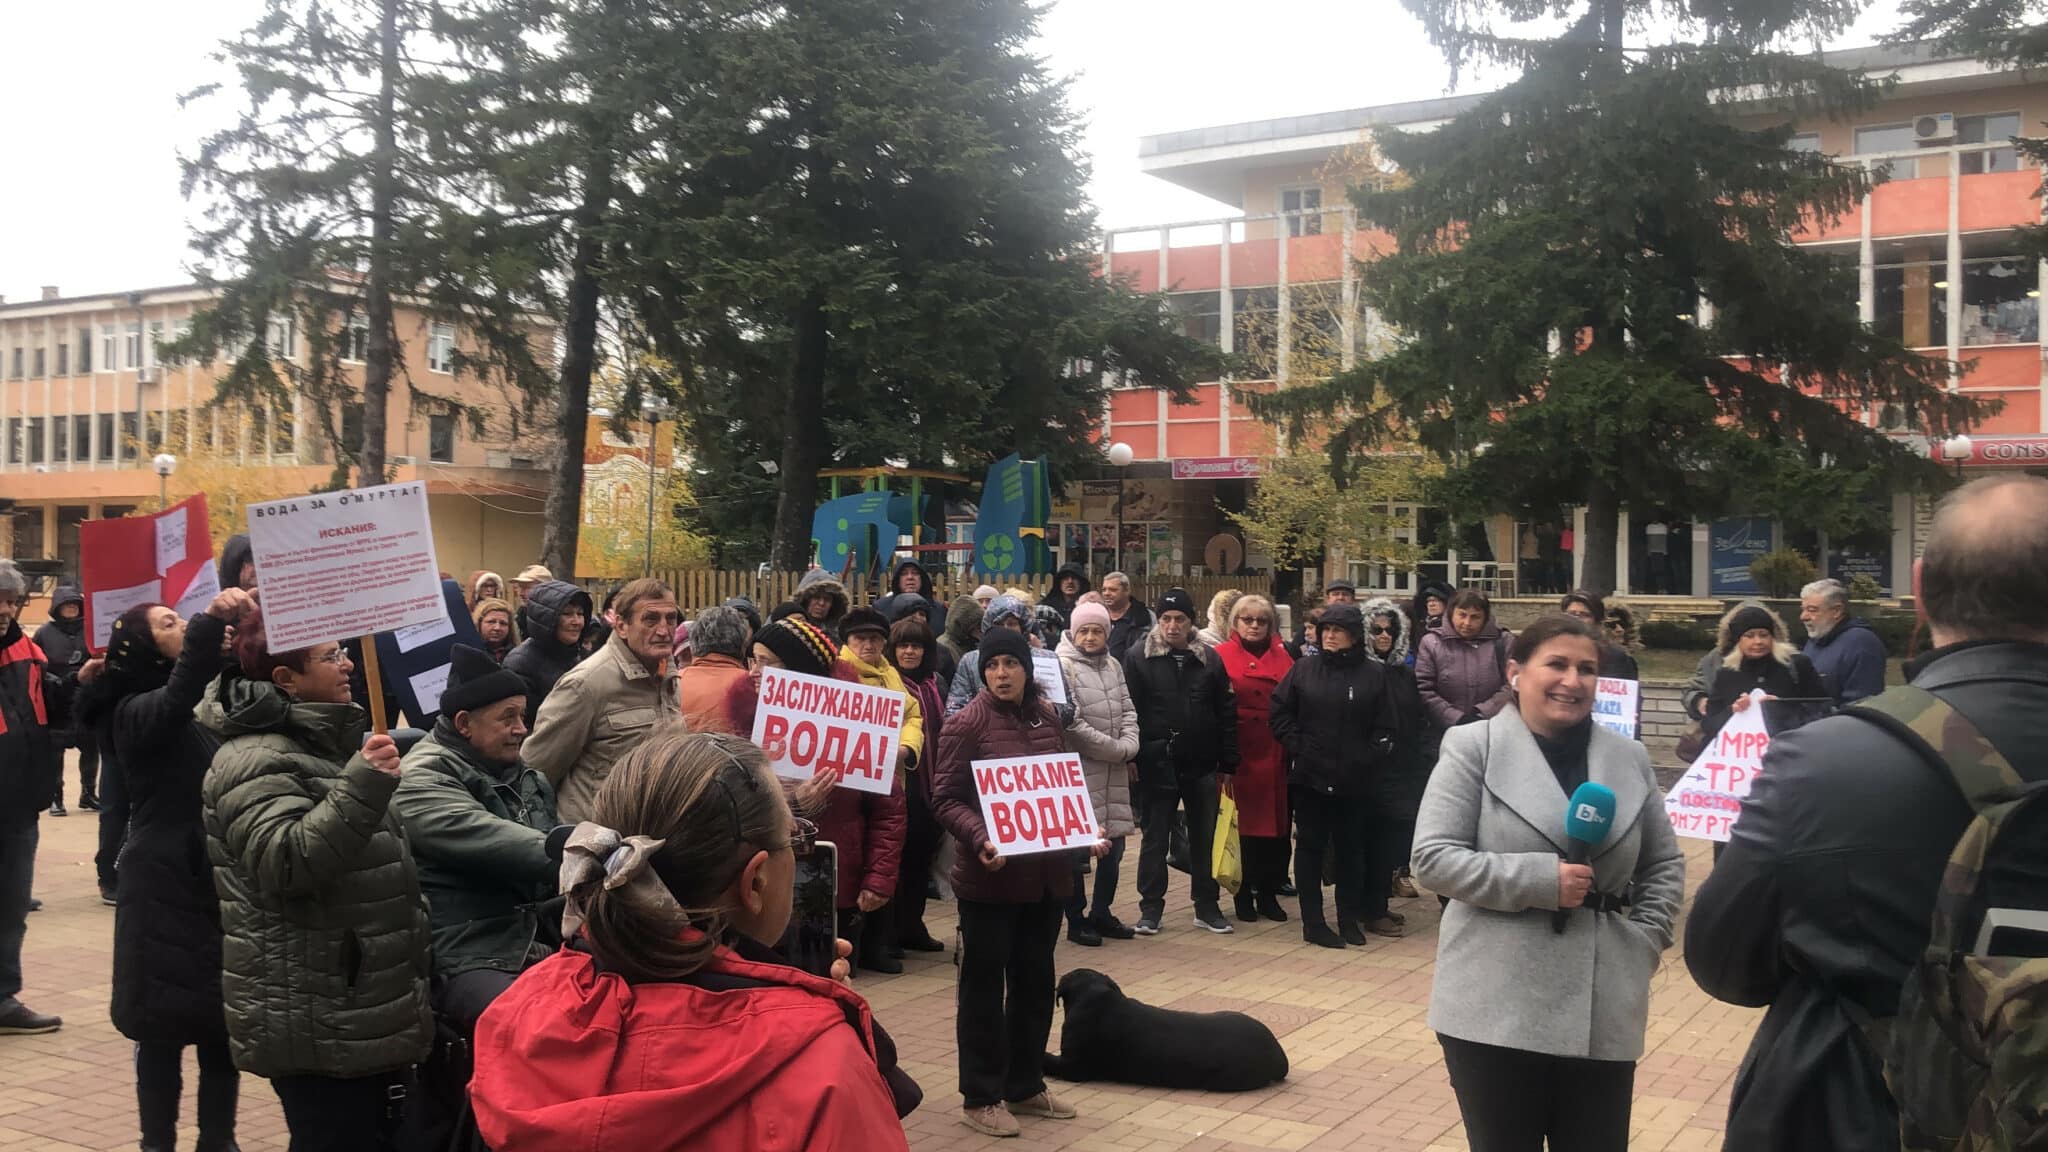 Пореден протест на местни жители на Омуртаг блокира пътя София – Варна